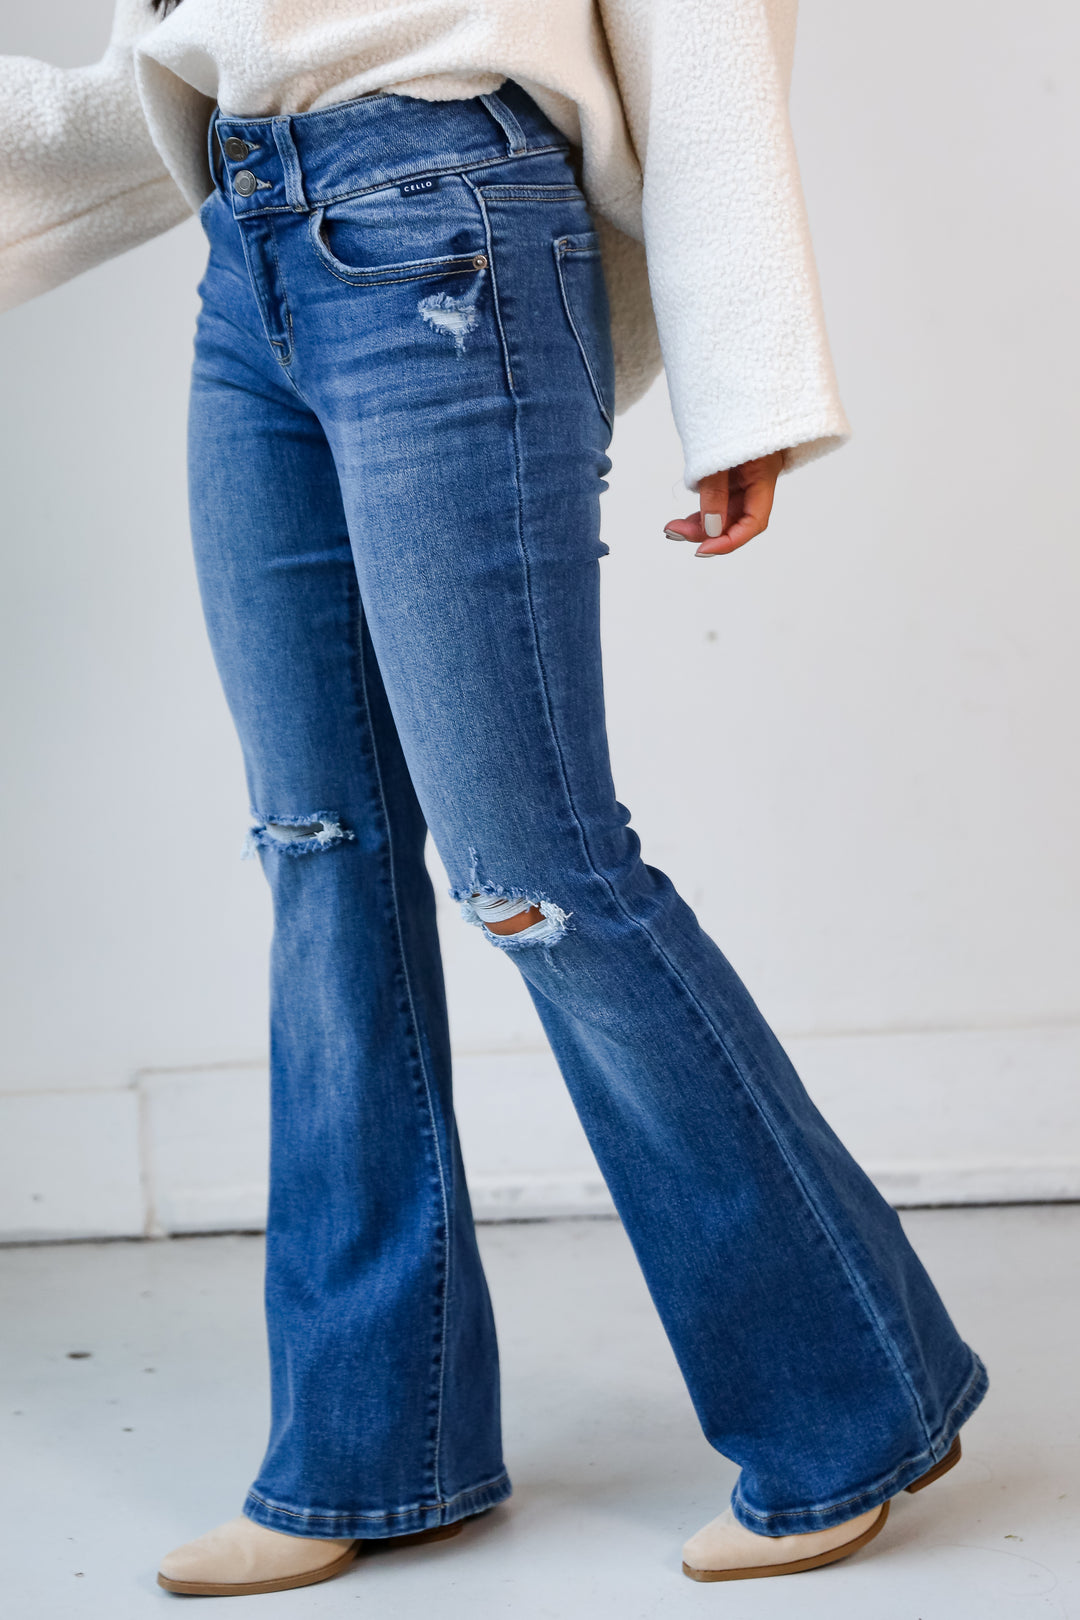 cute jeans for women